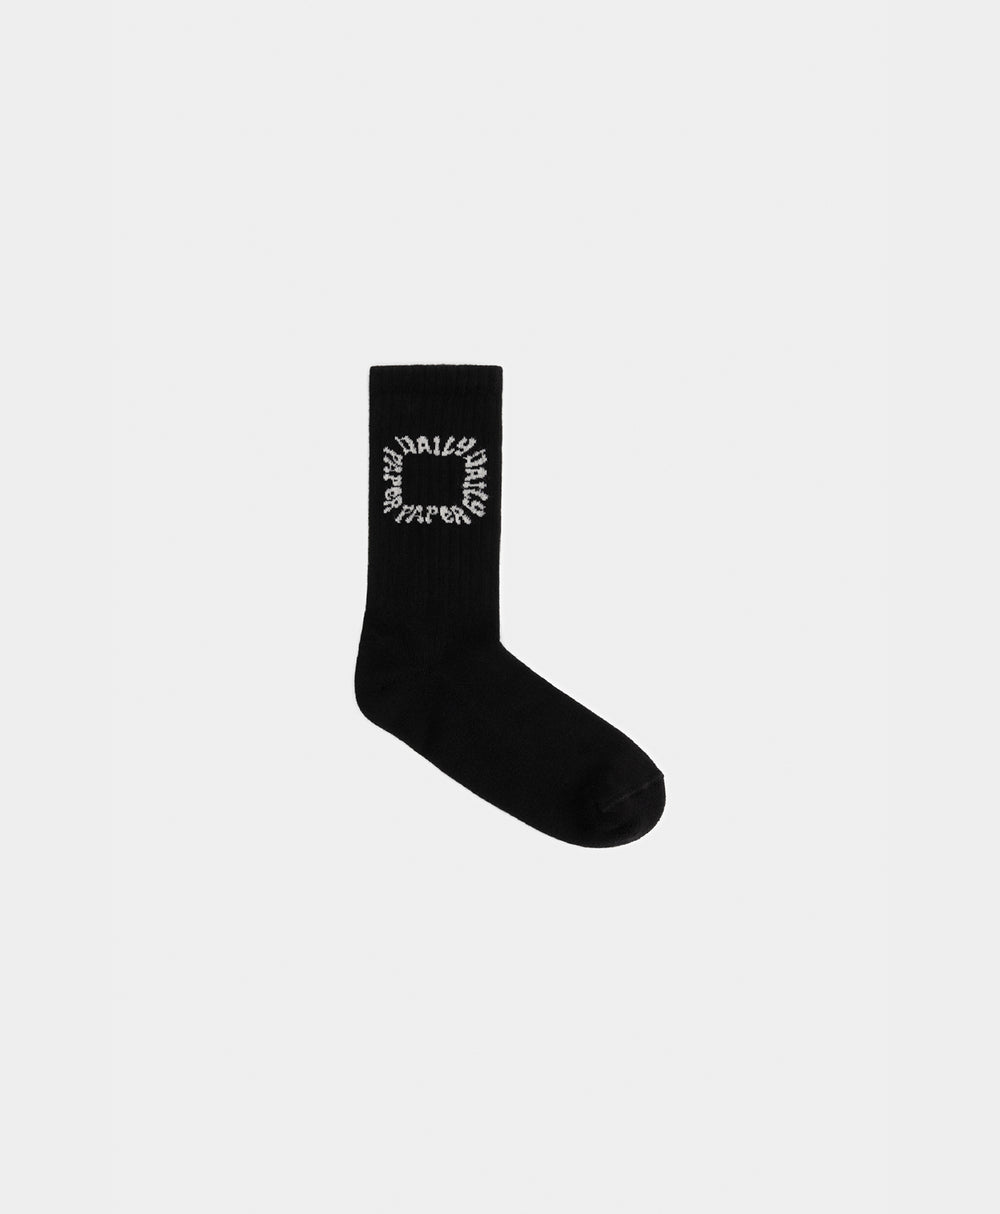 DP - Black Pape Socks - Packshot - Front